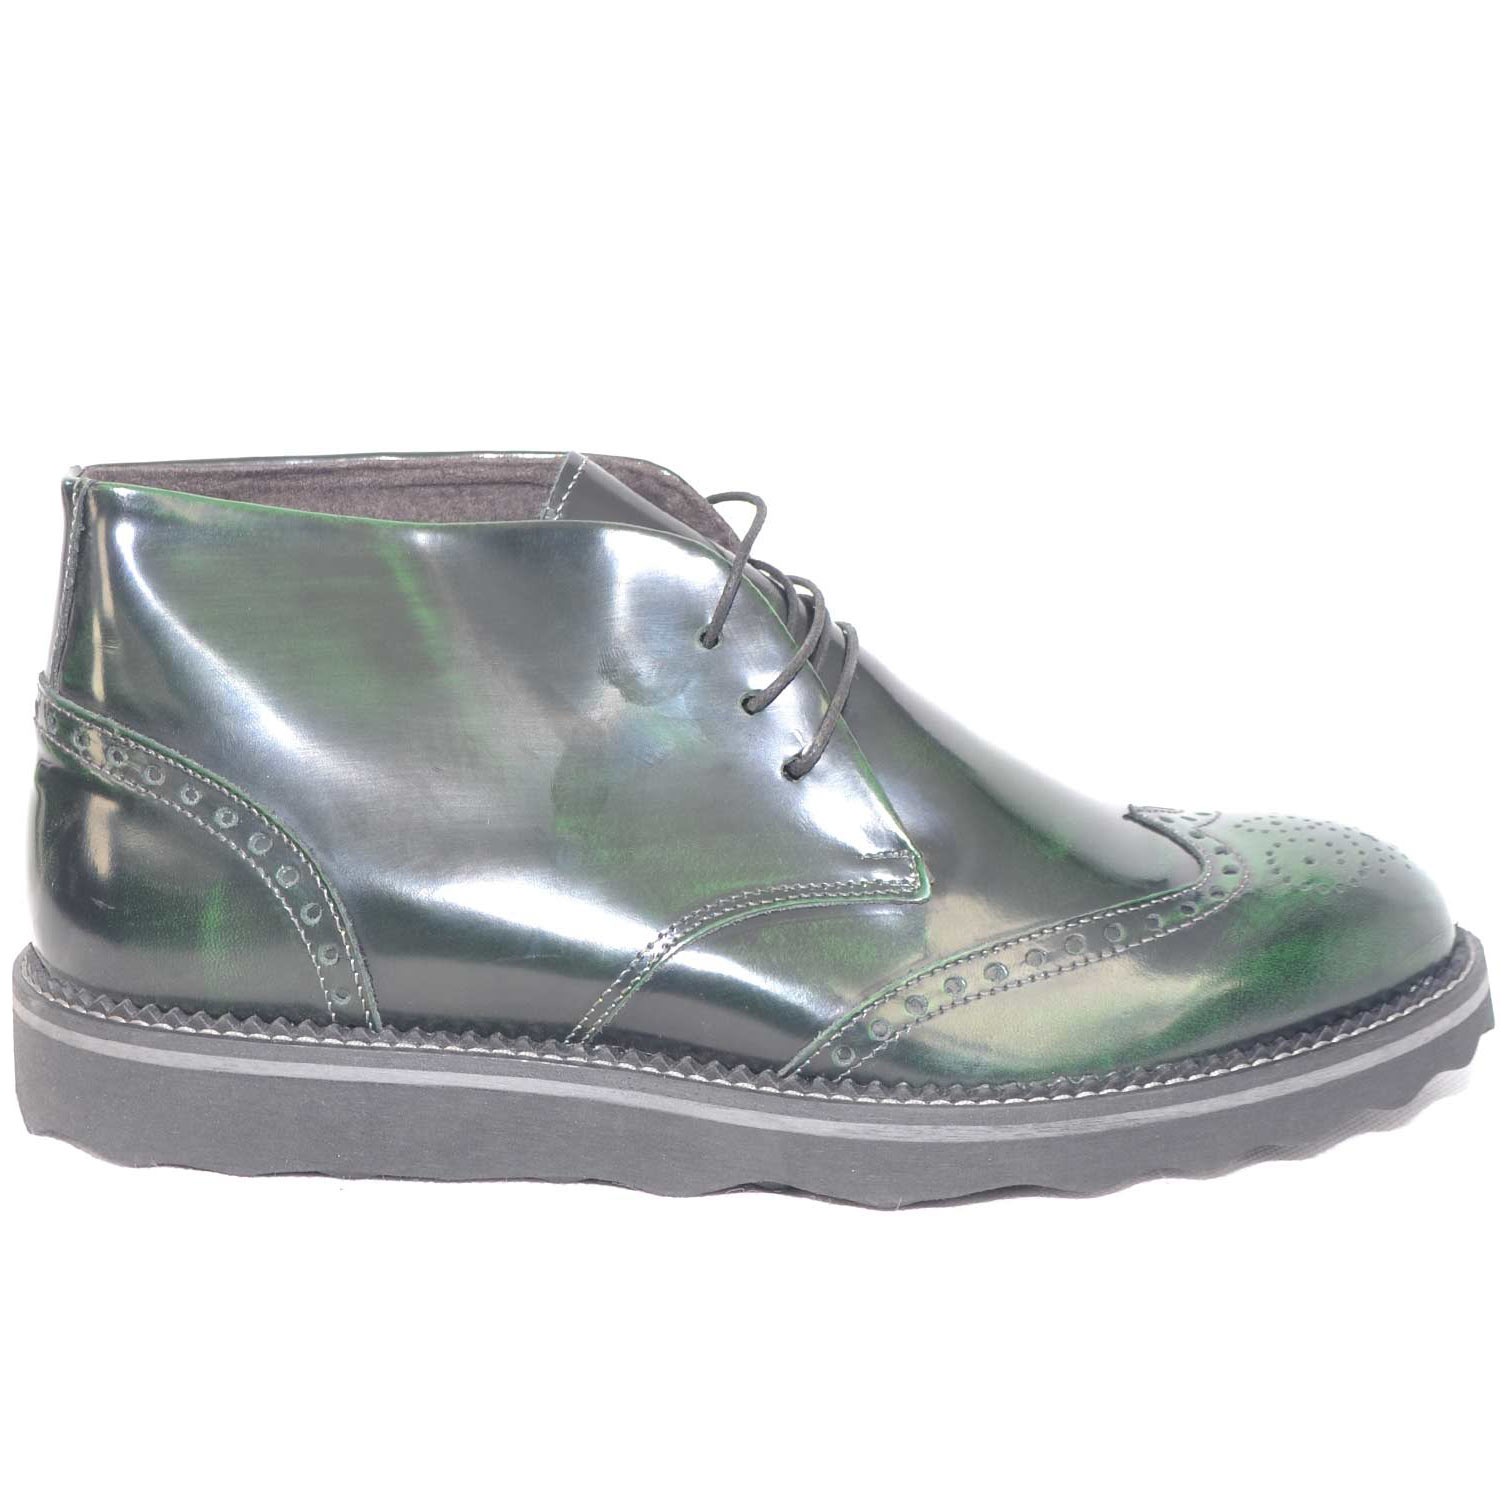 Polacchino scarpe uomo tomaia in vera pelle abrasivato verde spazzolato fondo micro antiscivolo vera gomma.